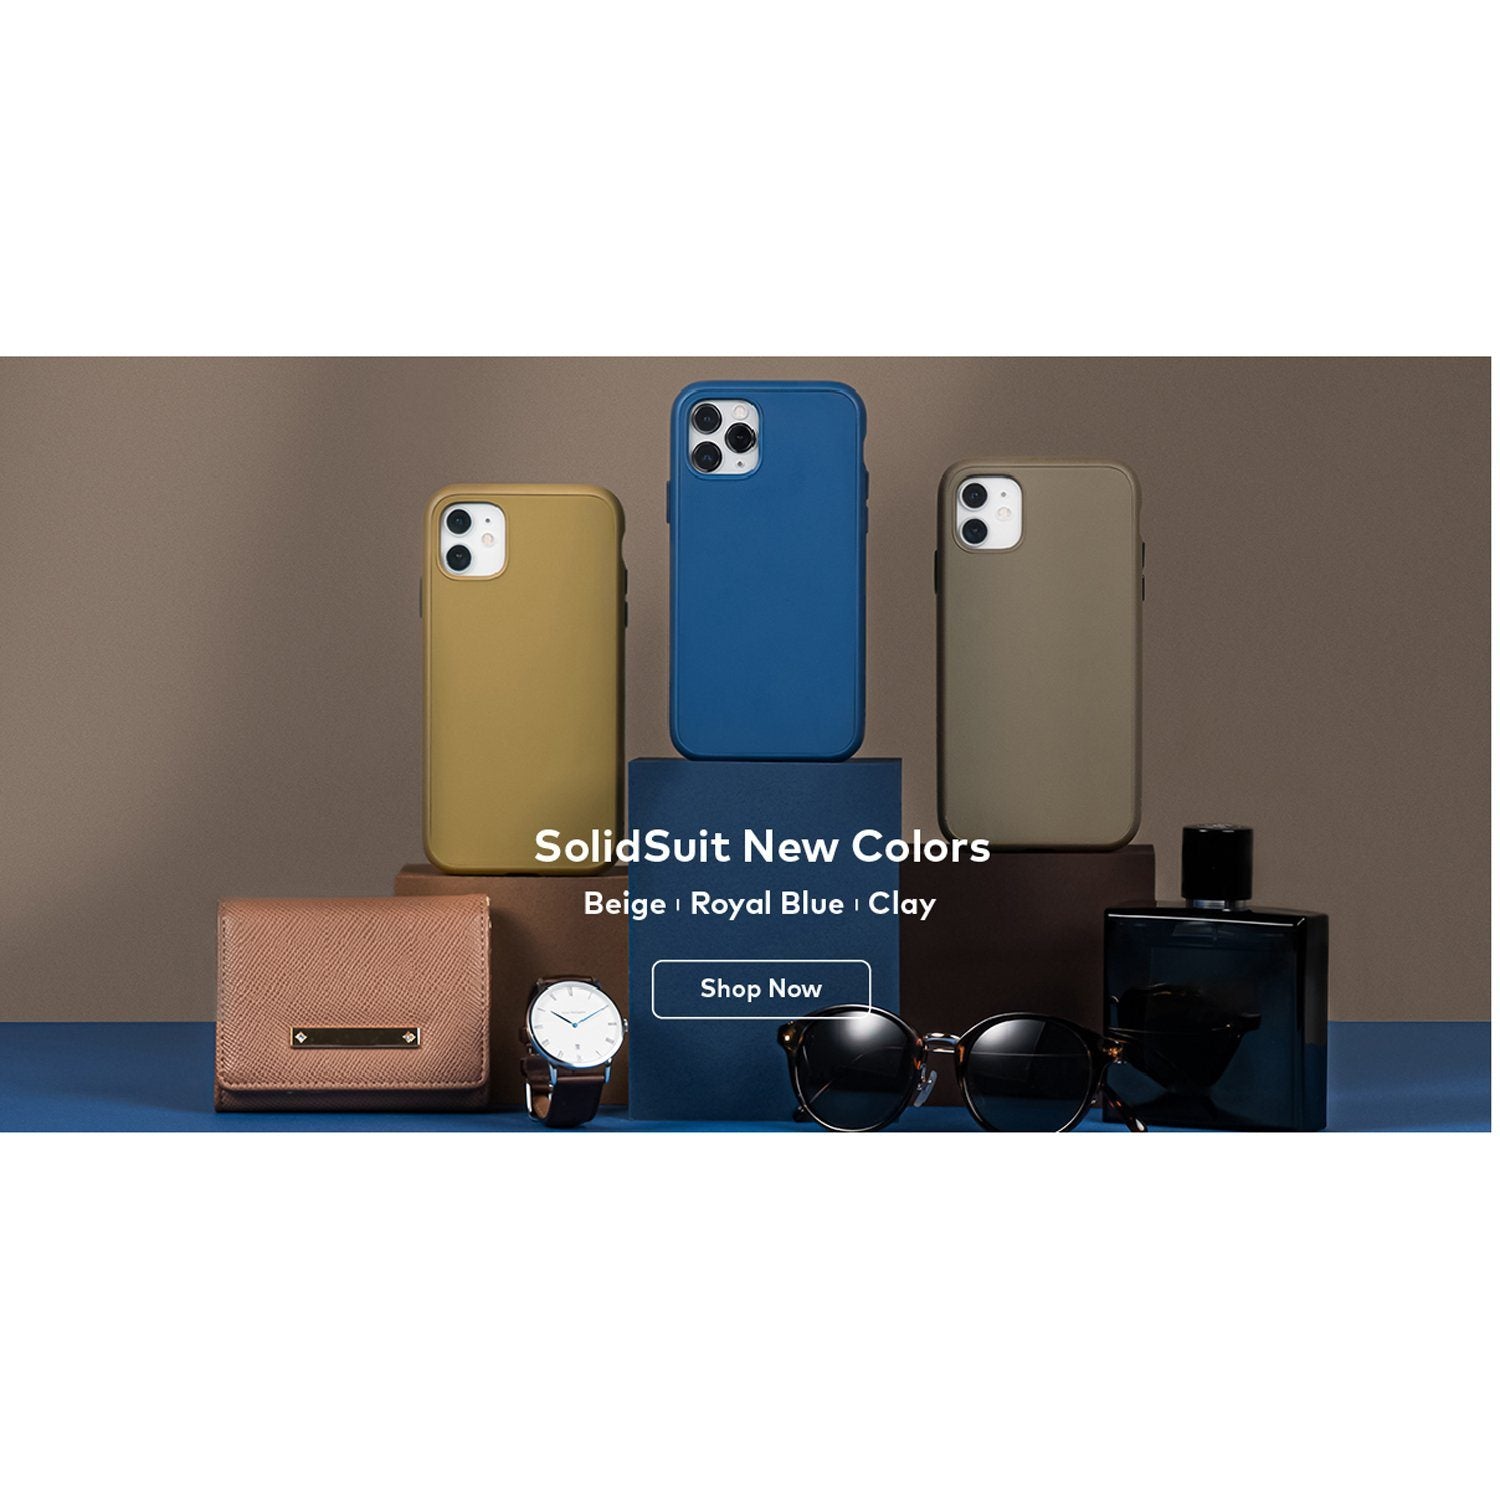 Iphone 12 pro max Case Bundle Nomad Leather Case Rhinoshield